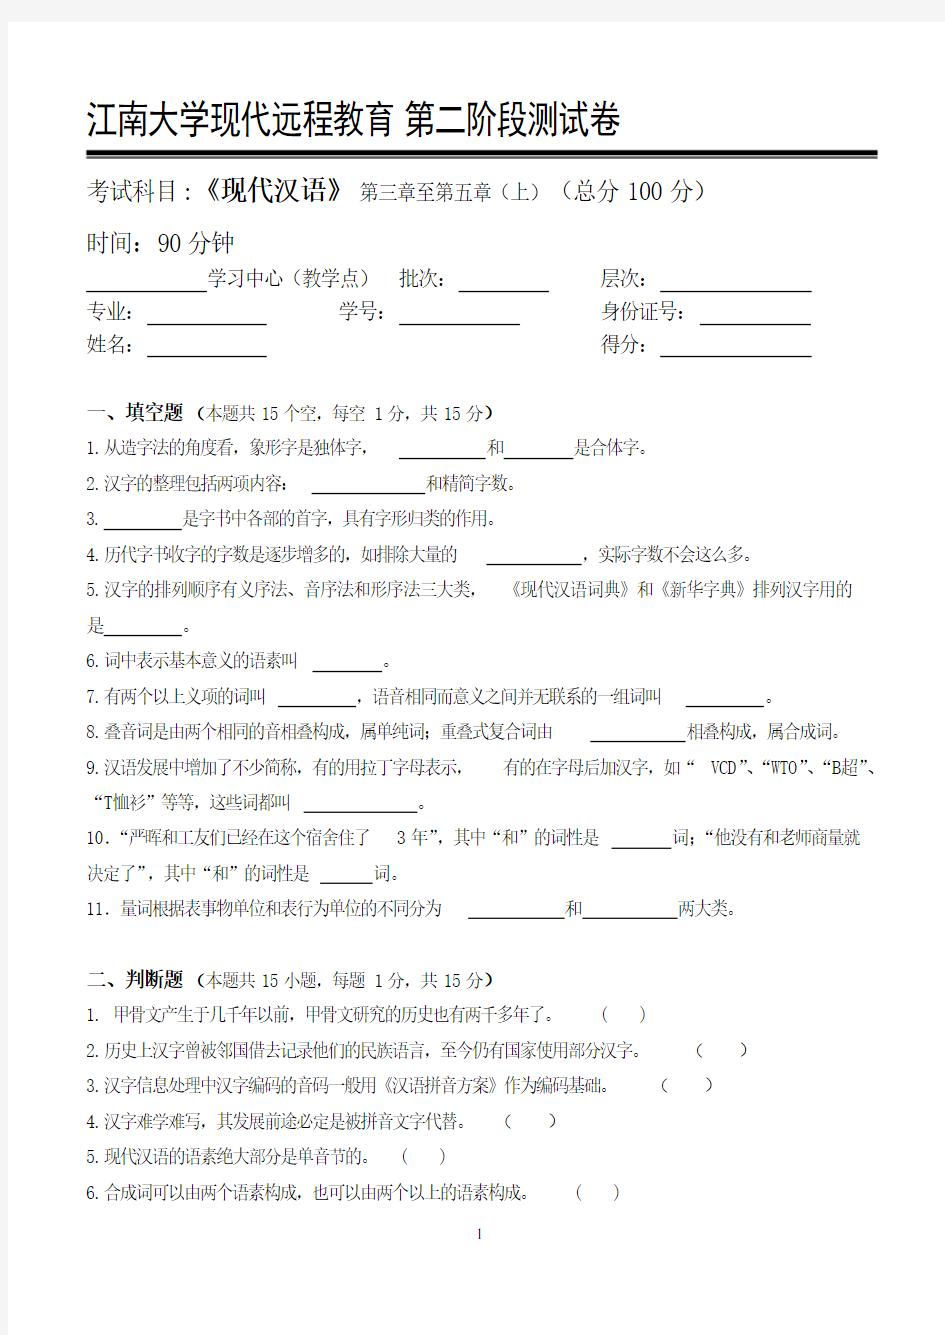 现代汉语第2阶段测试题